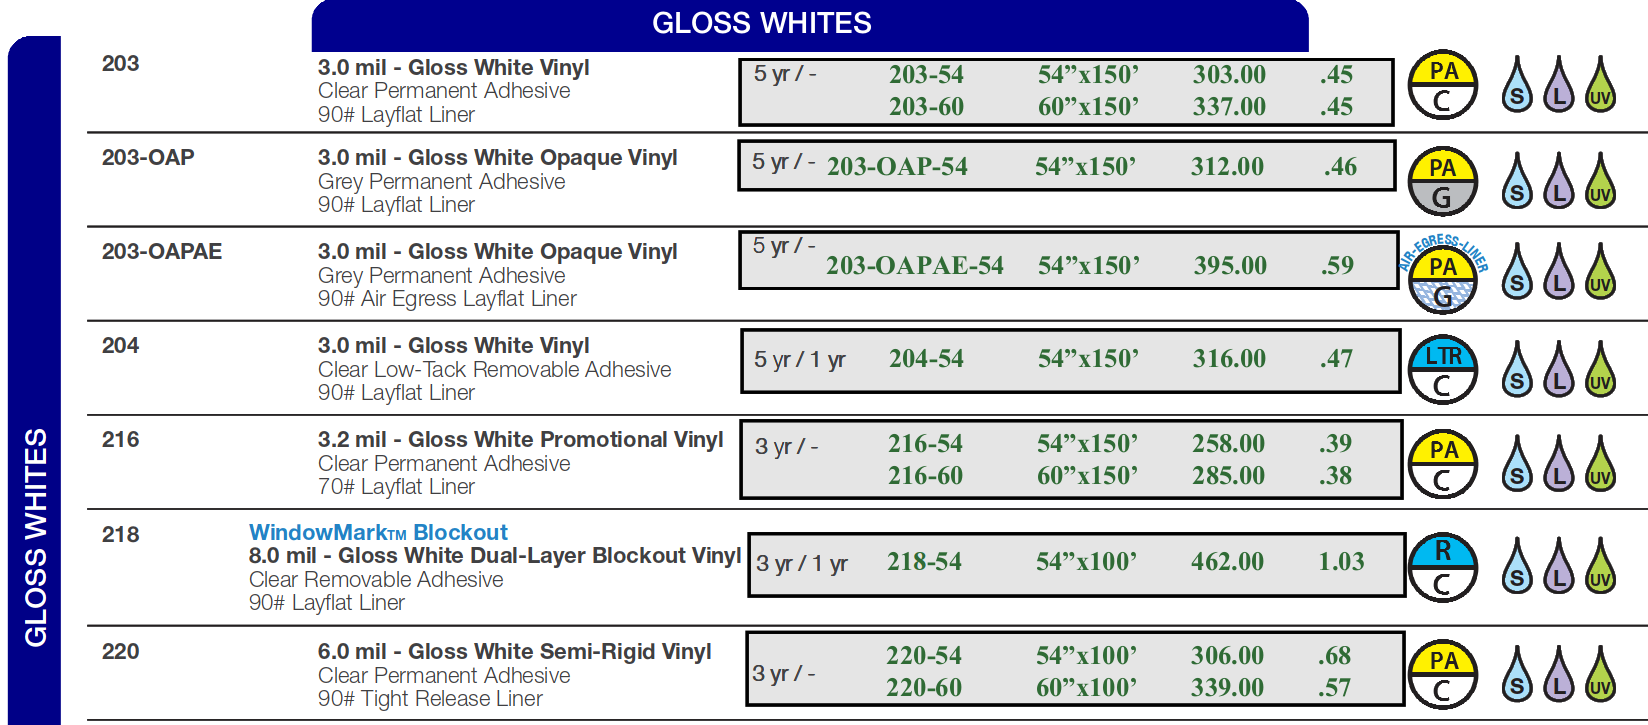 GC gloss white 2022 - Digital Print Media - Gloss Whites